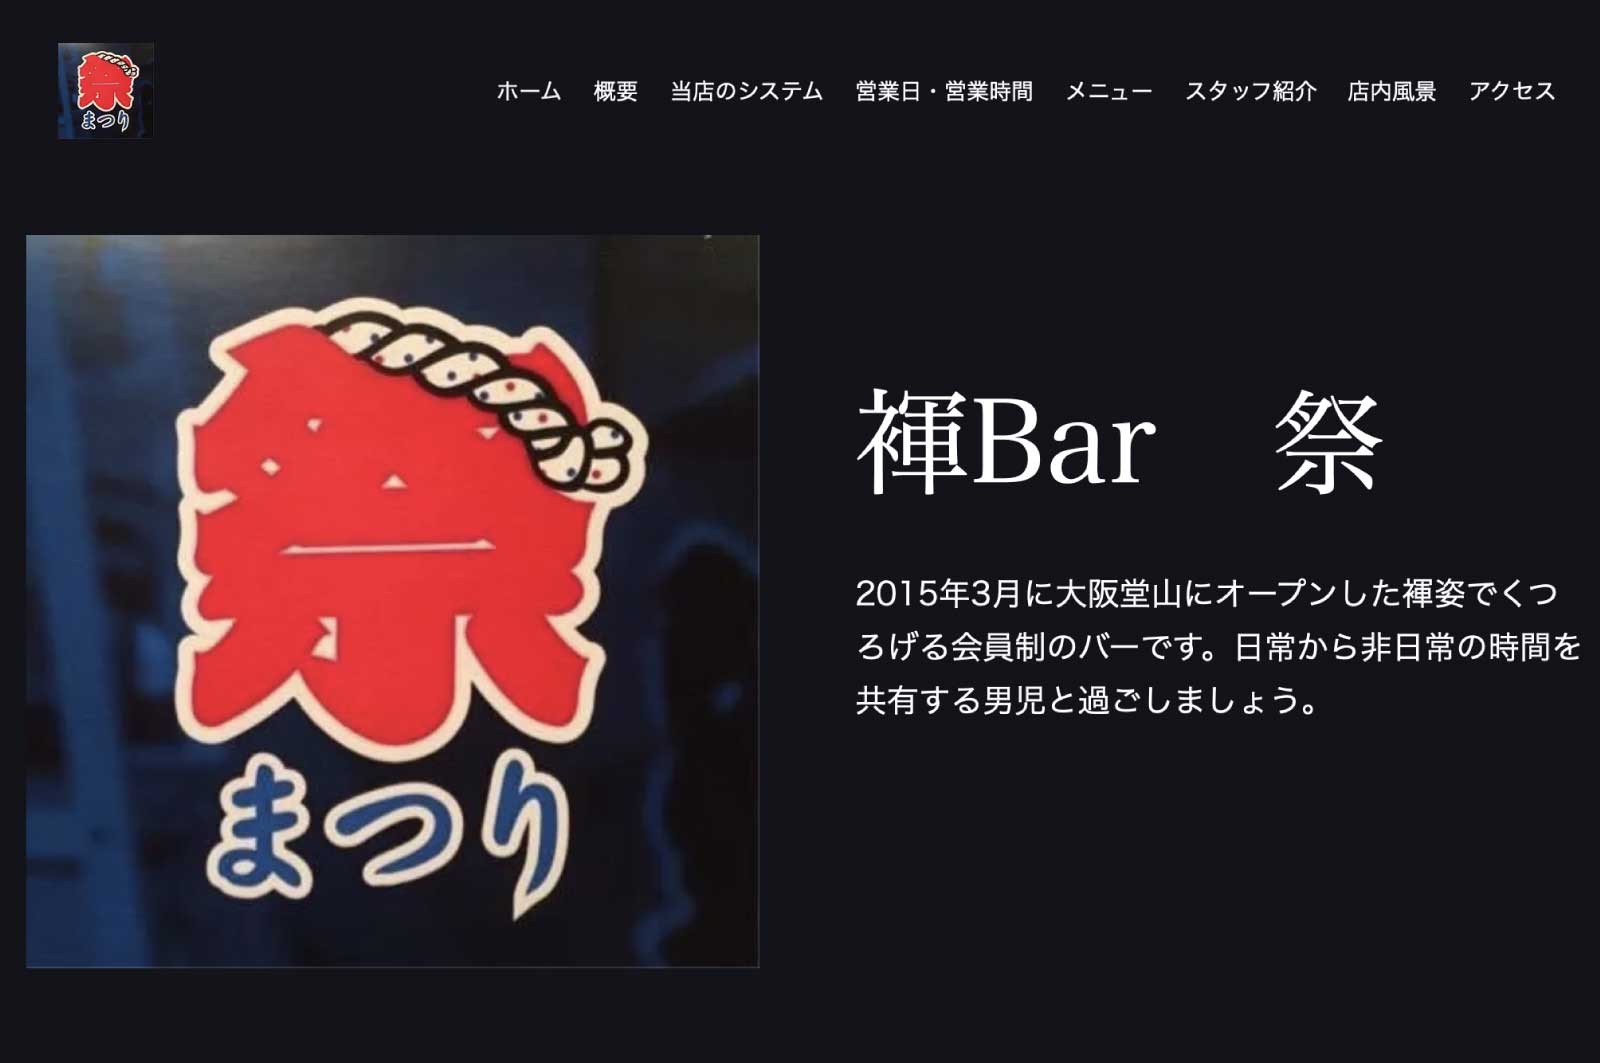 褌Bar 祭